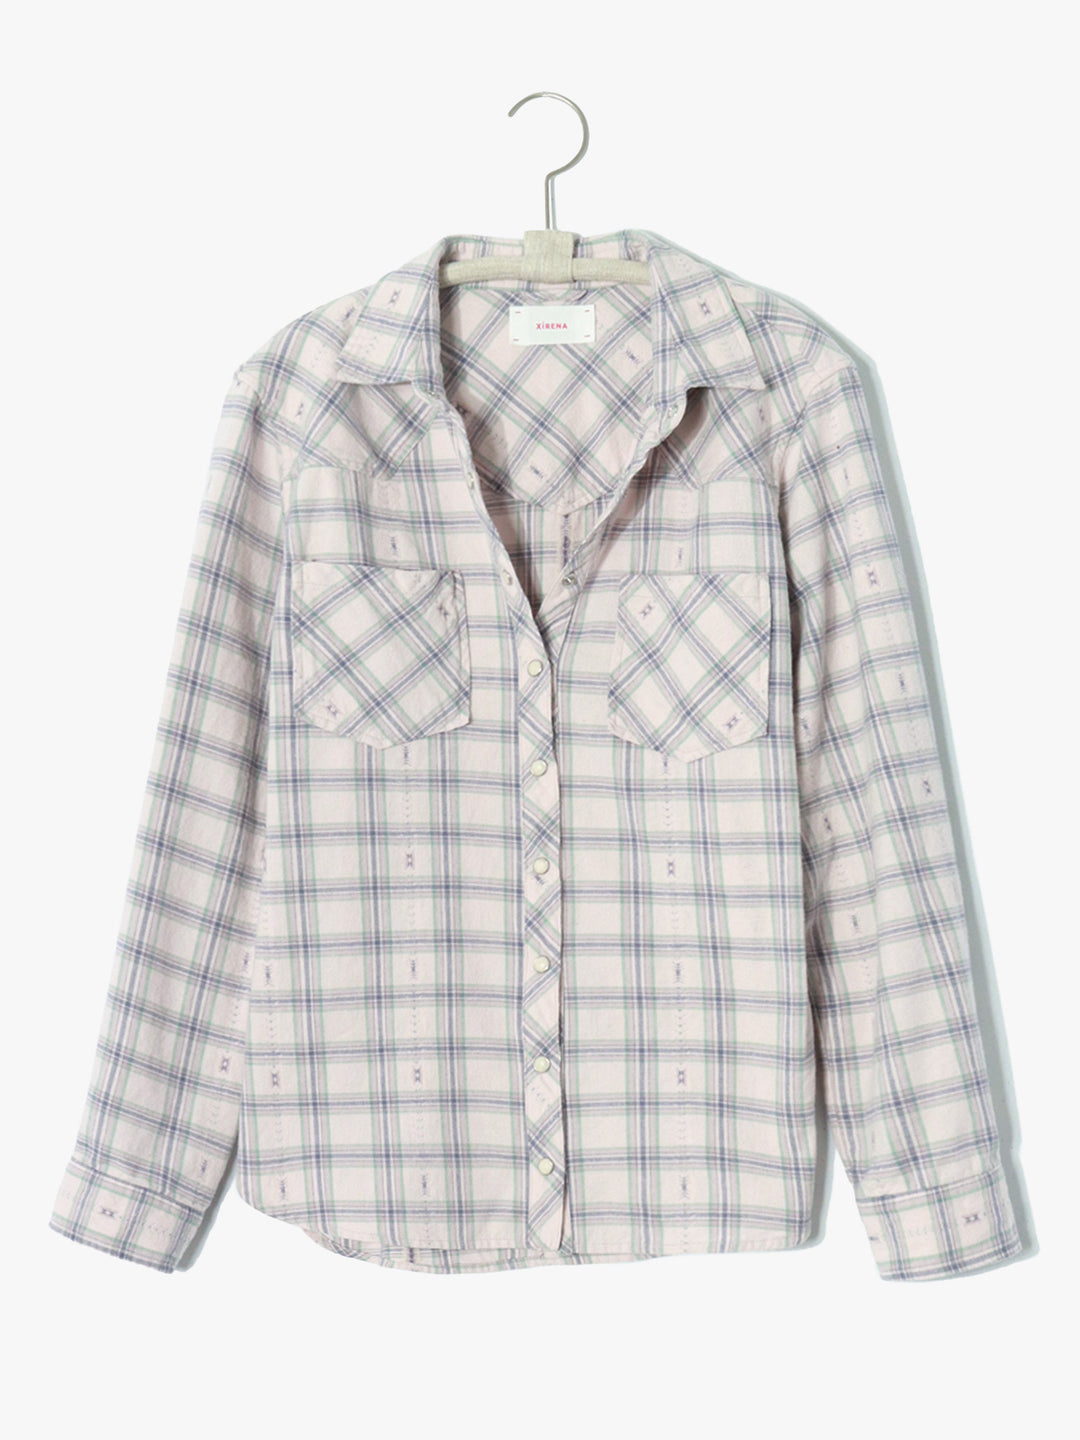 Xirena - Denley Shirt in Lilac Quartz